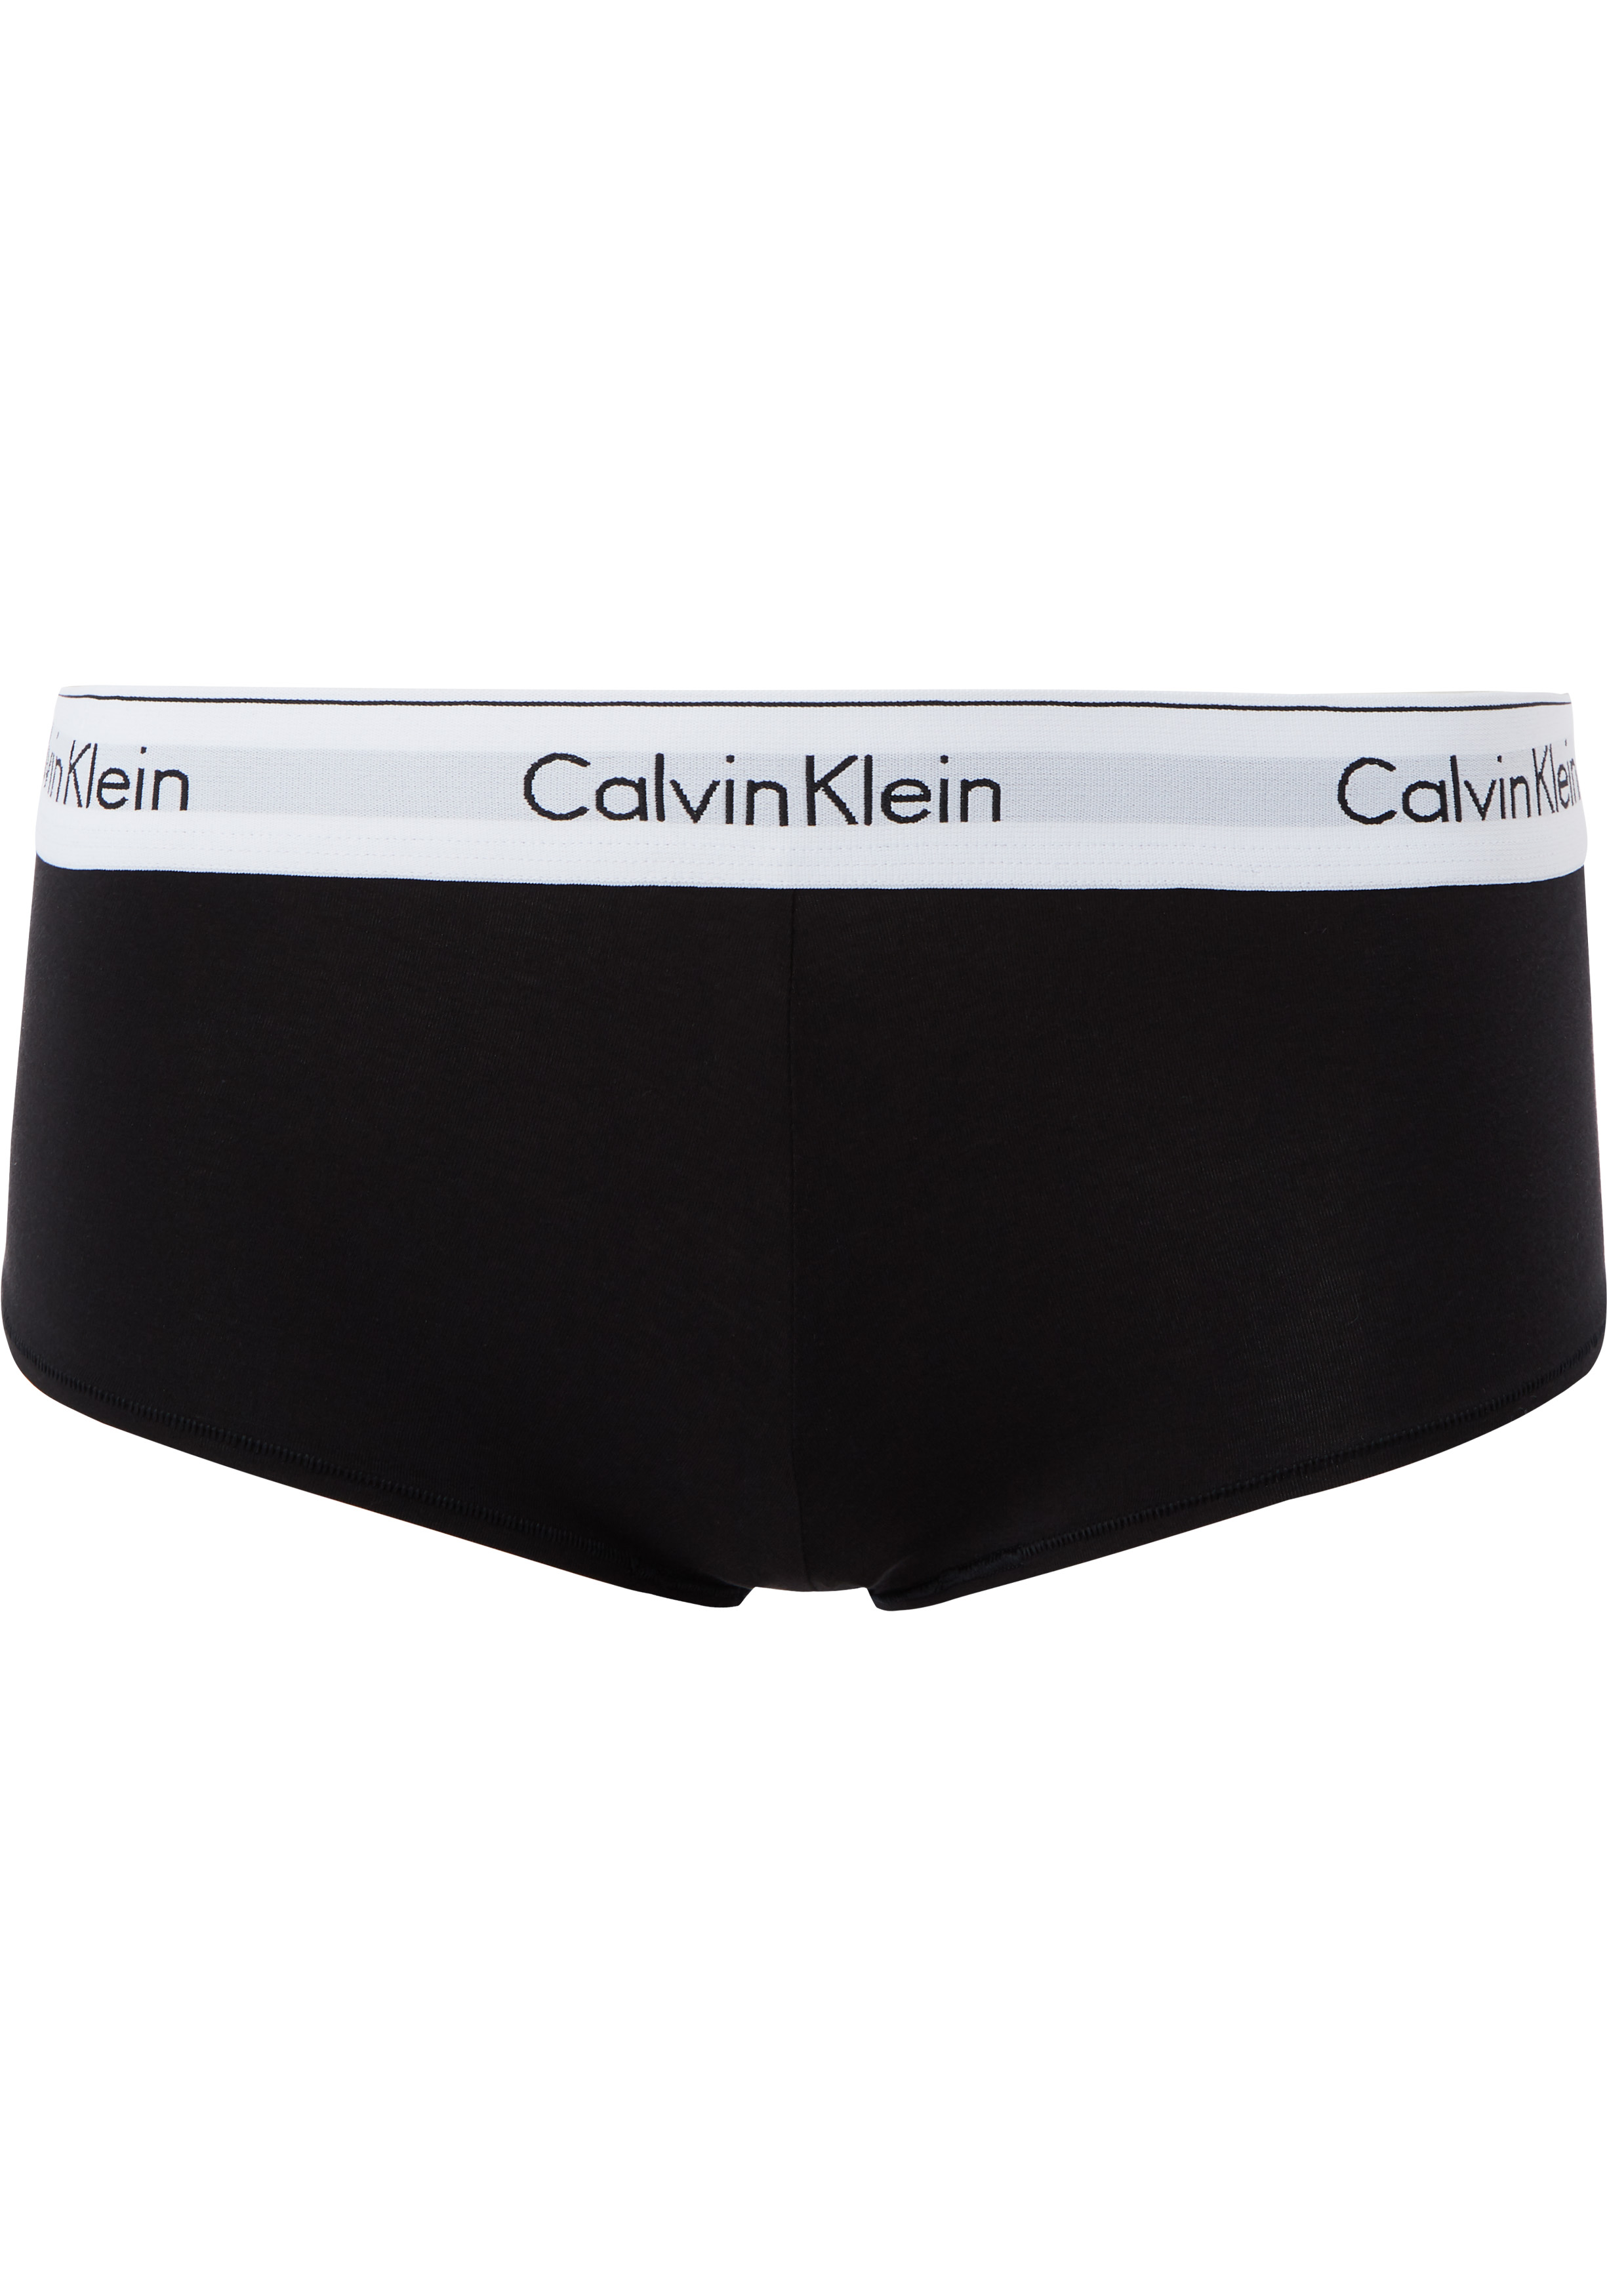 Calvin Klein dames Modern Cotton hipster slip, boyshort, zwart